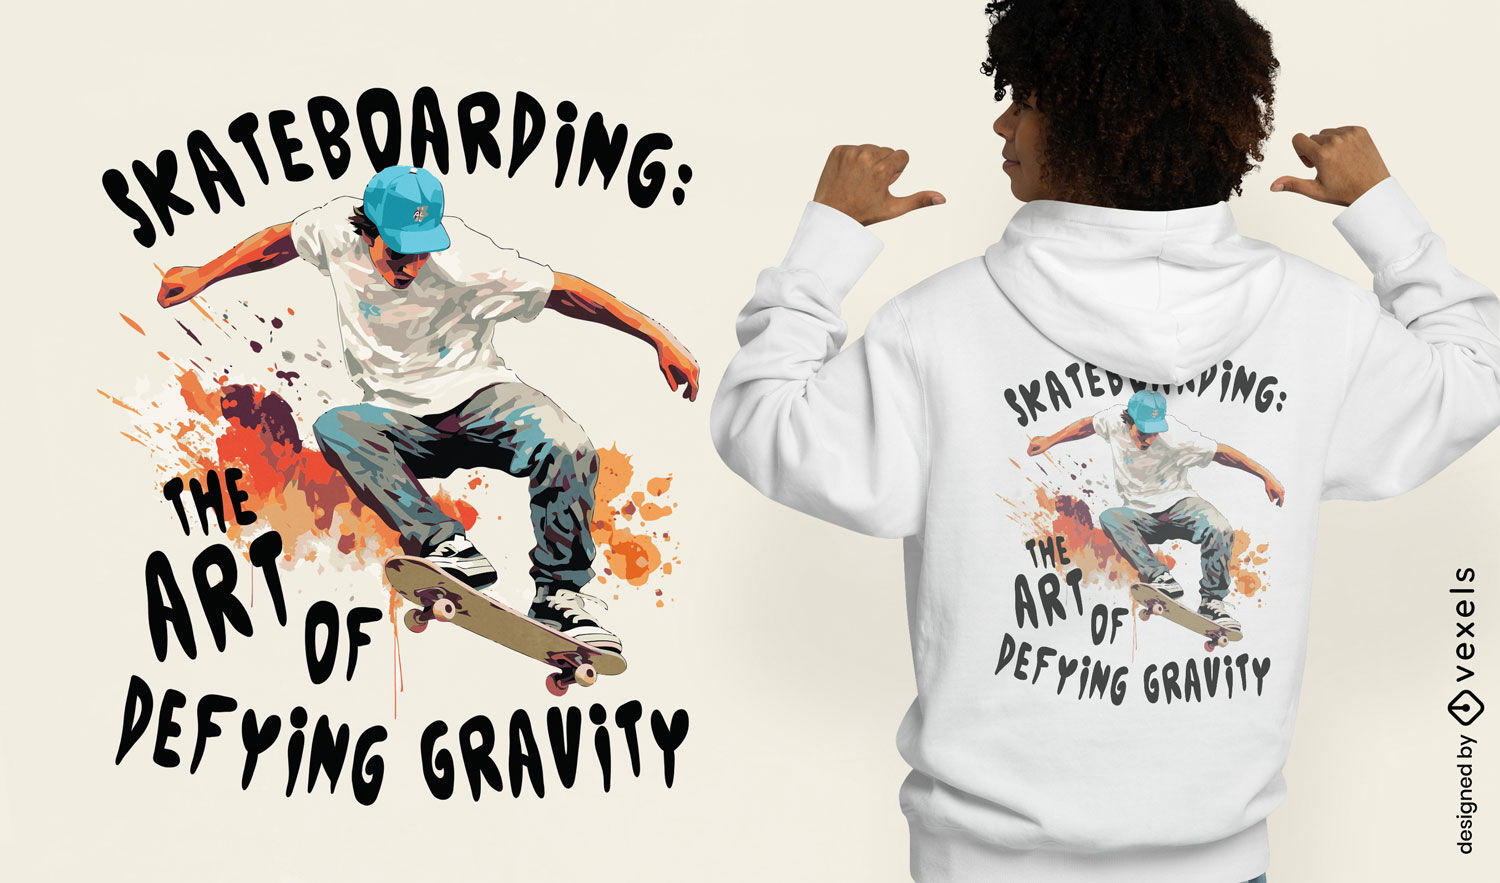 Skateboarding art t-shirt design